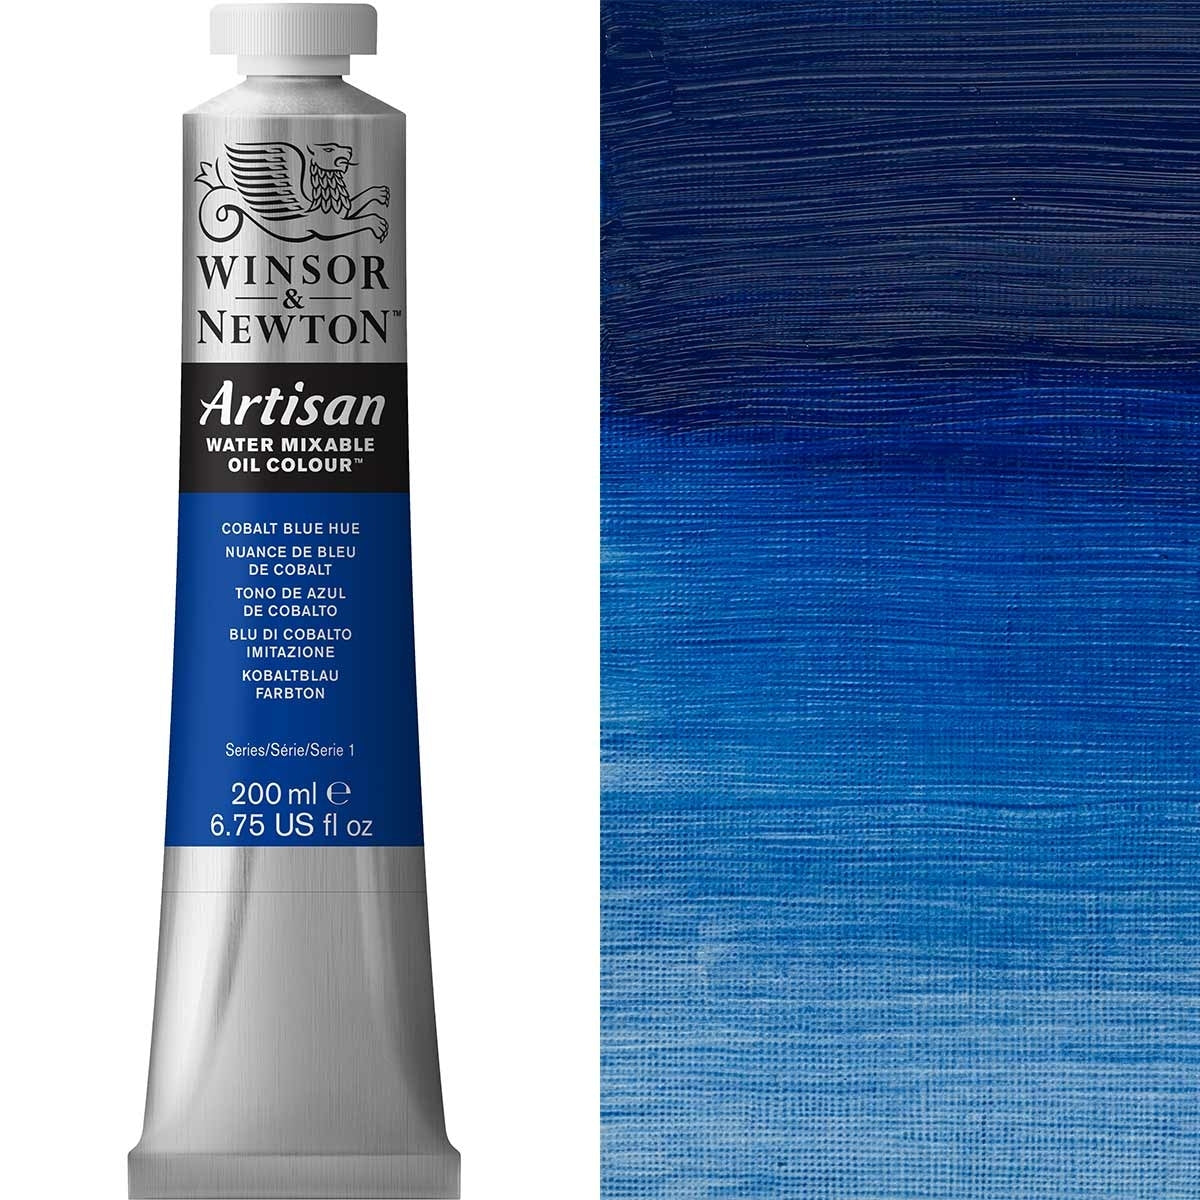 Winsor e Newton - Watermixable di colore olio artigianale - 200 ml - Cobalt Blue Hue